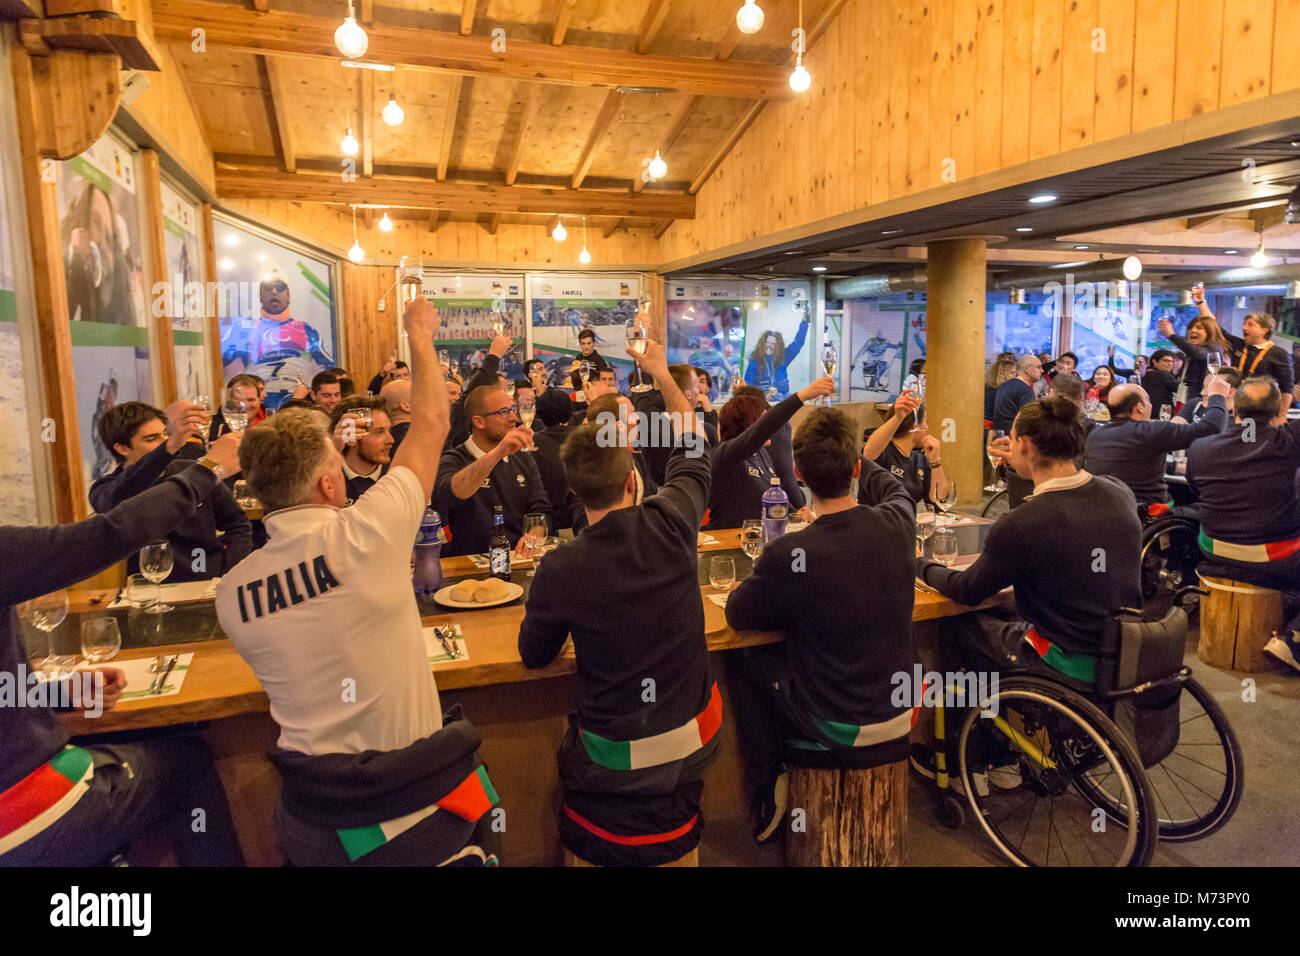 Pyeongchang, Corée du Sud. 8 mars 2018 - Ouverture de la Casa Italia au village paralympique à PeyongChang Crédit : Marco Ciccolella/Alamy Live News Banque D'Images